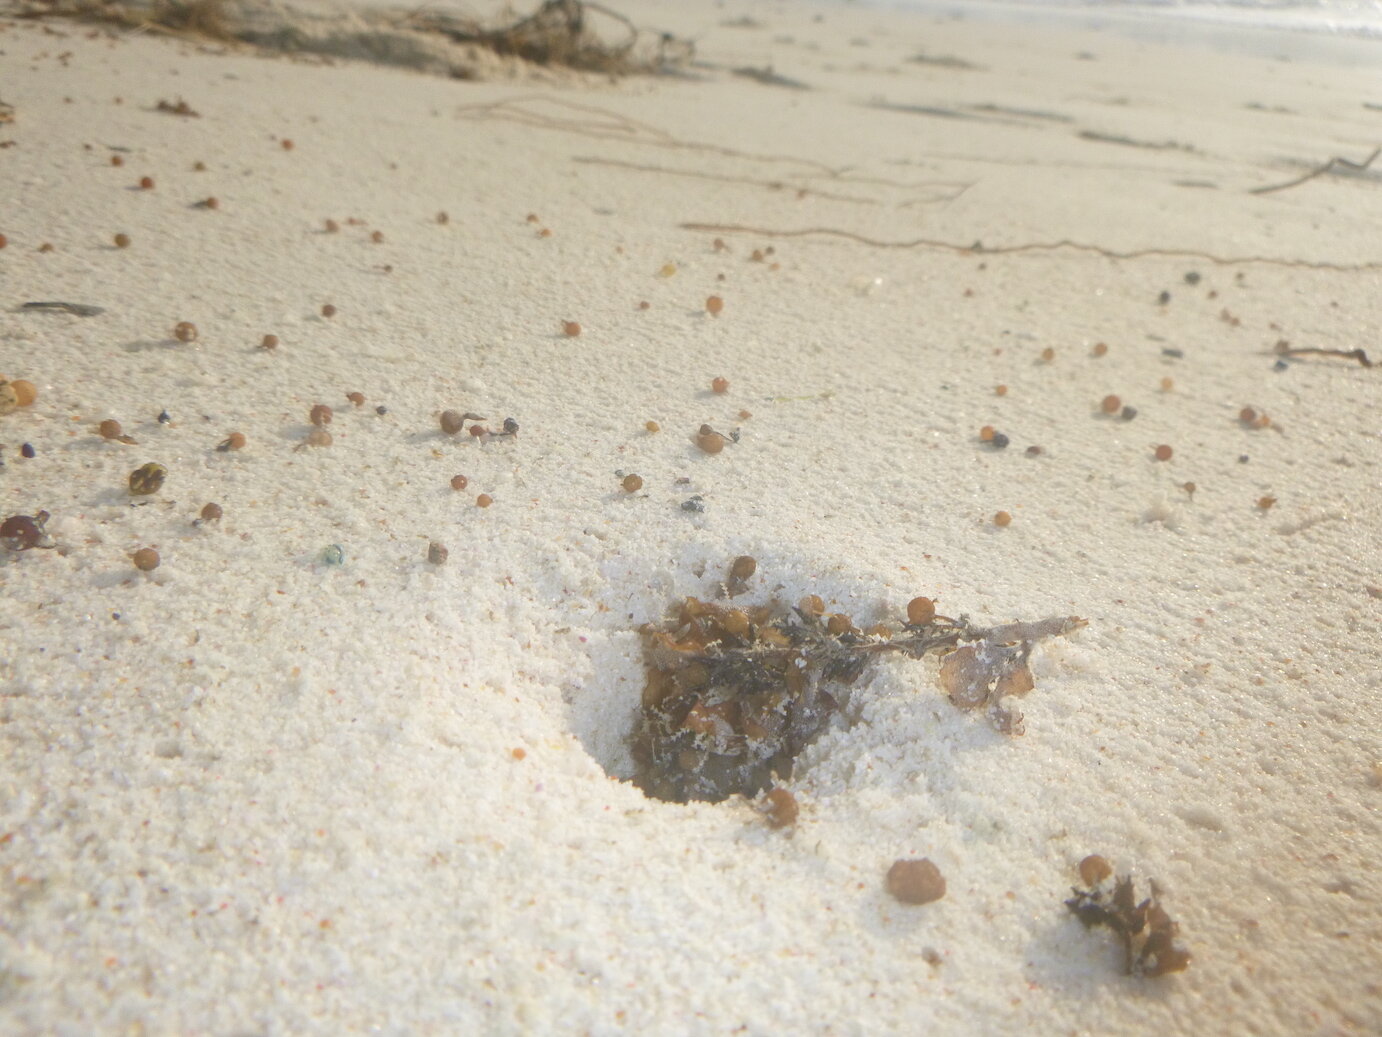 Ghost crab beach hideout